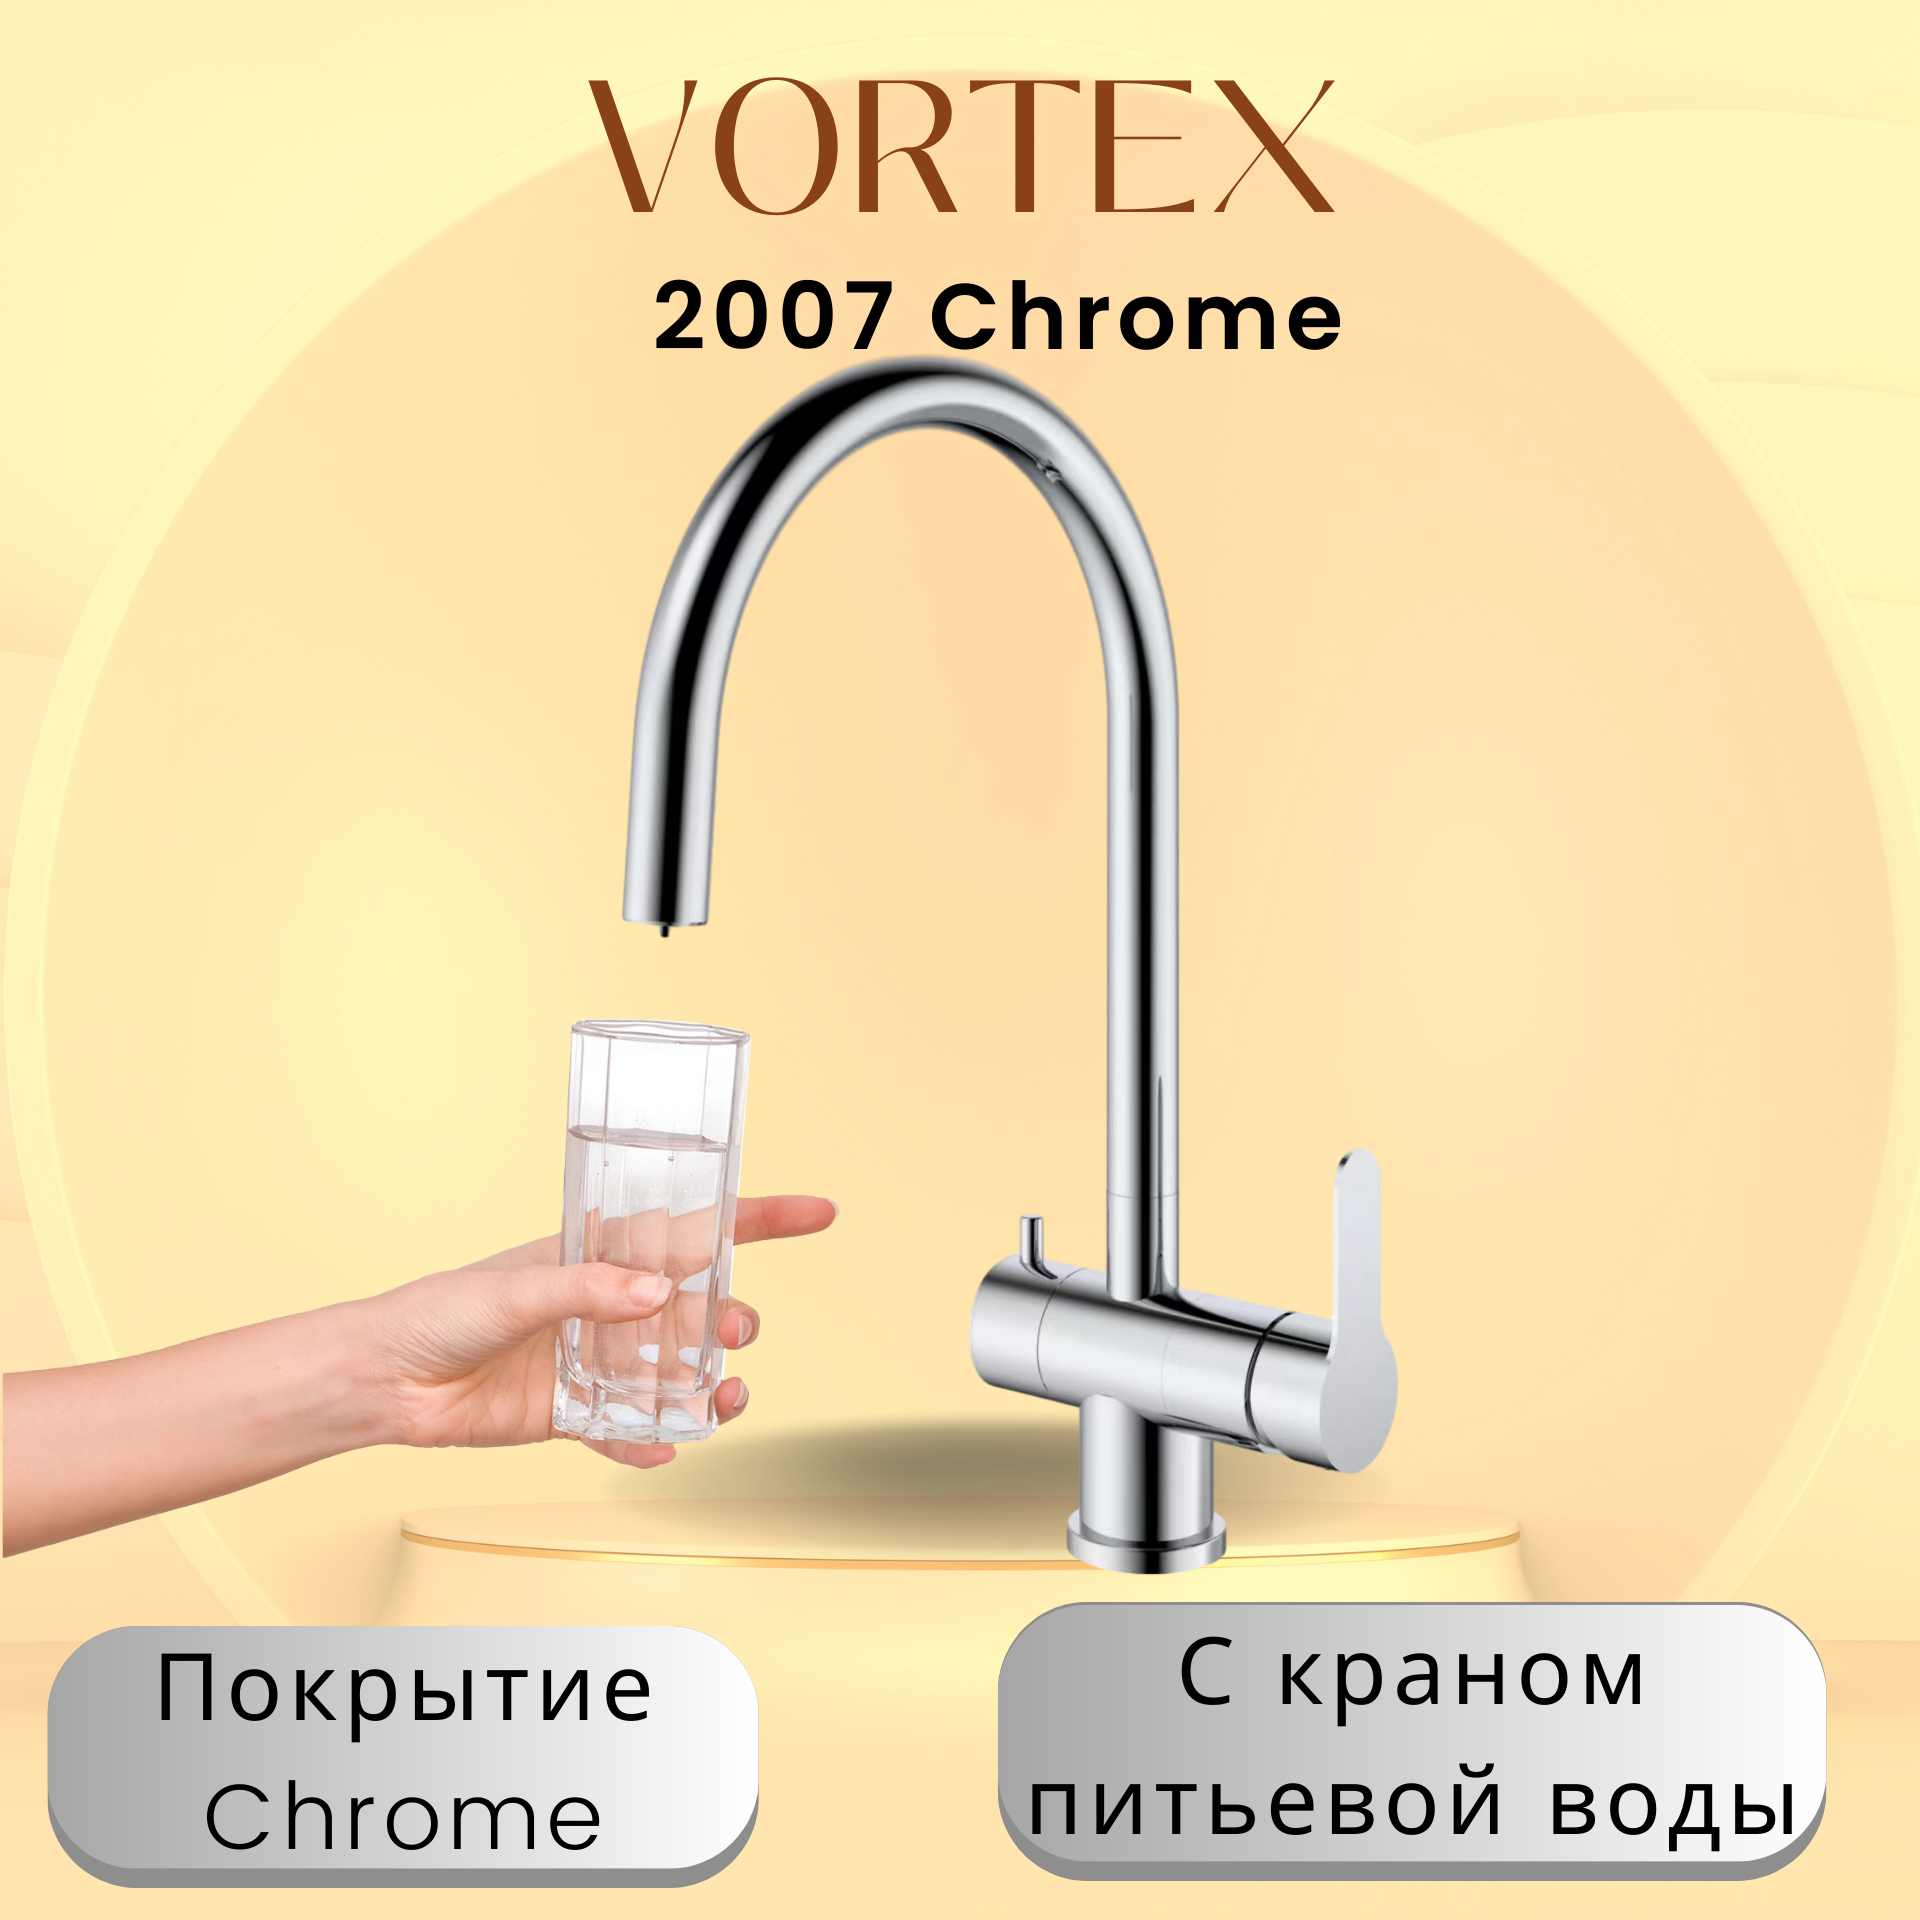 Кухонный смеситель с краном питьевой воды Vortex VX-2007 Chrome смеситель для биде elghansa praktic chrome 49a2660